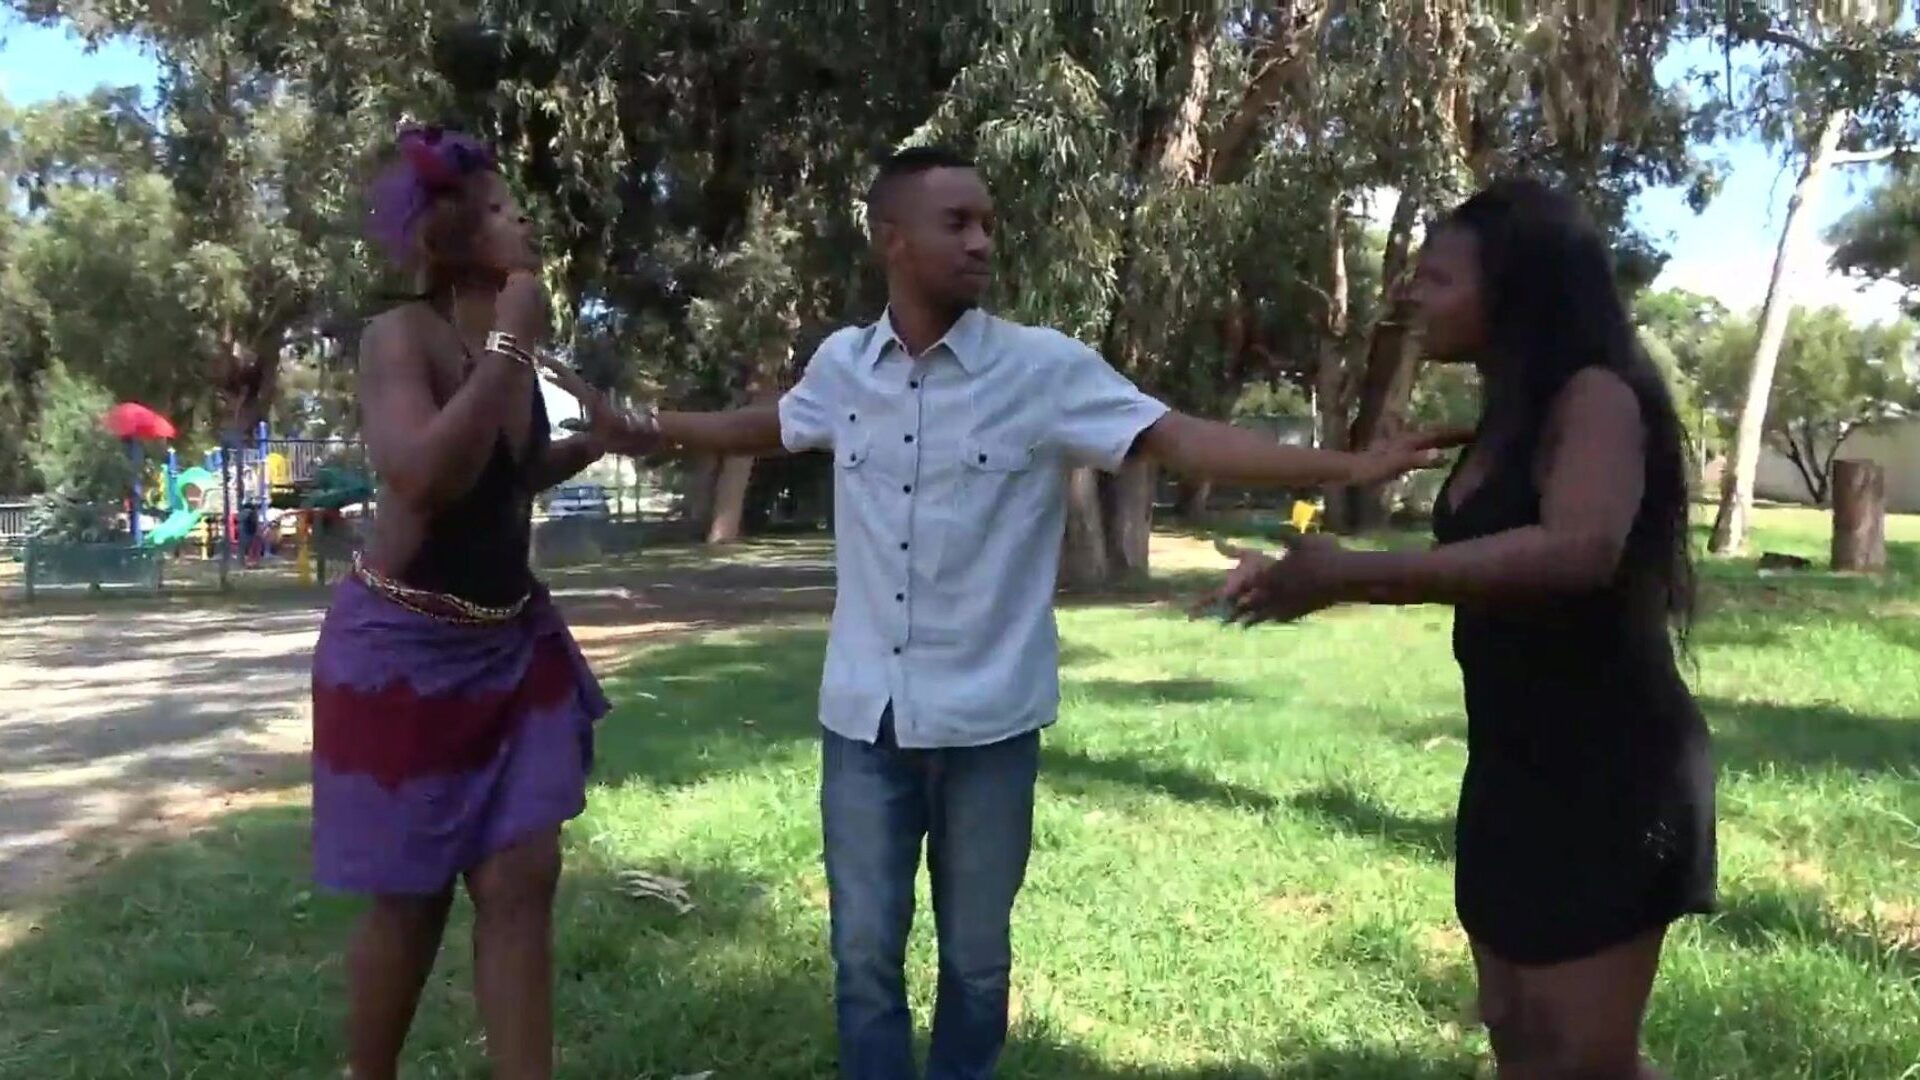 ضبط زوجين أفريقيين في الهواء الطلق في حديقة عامة !!!